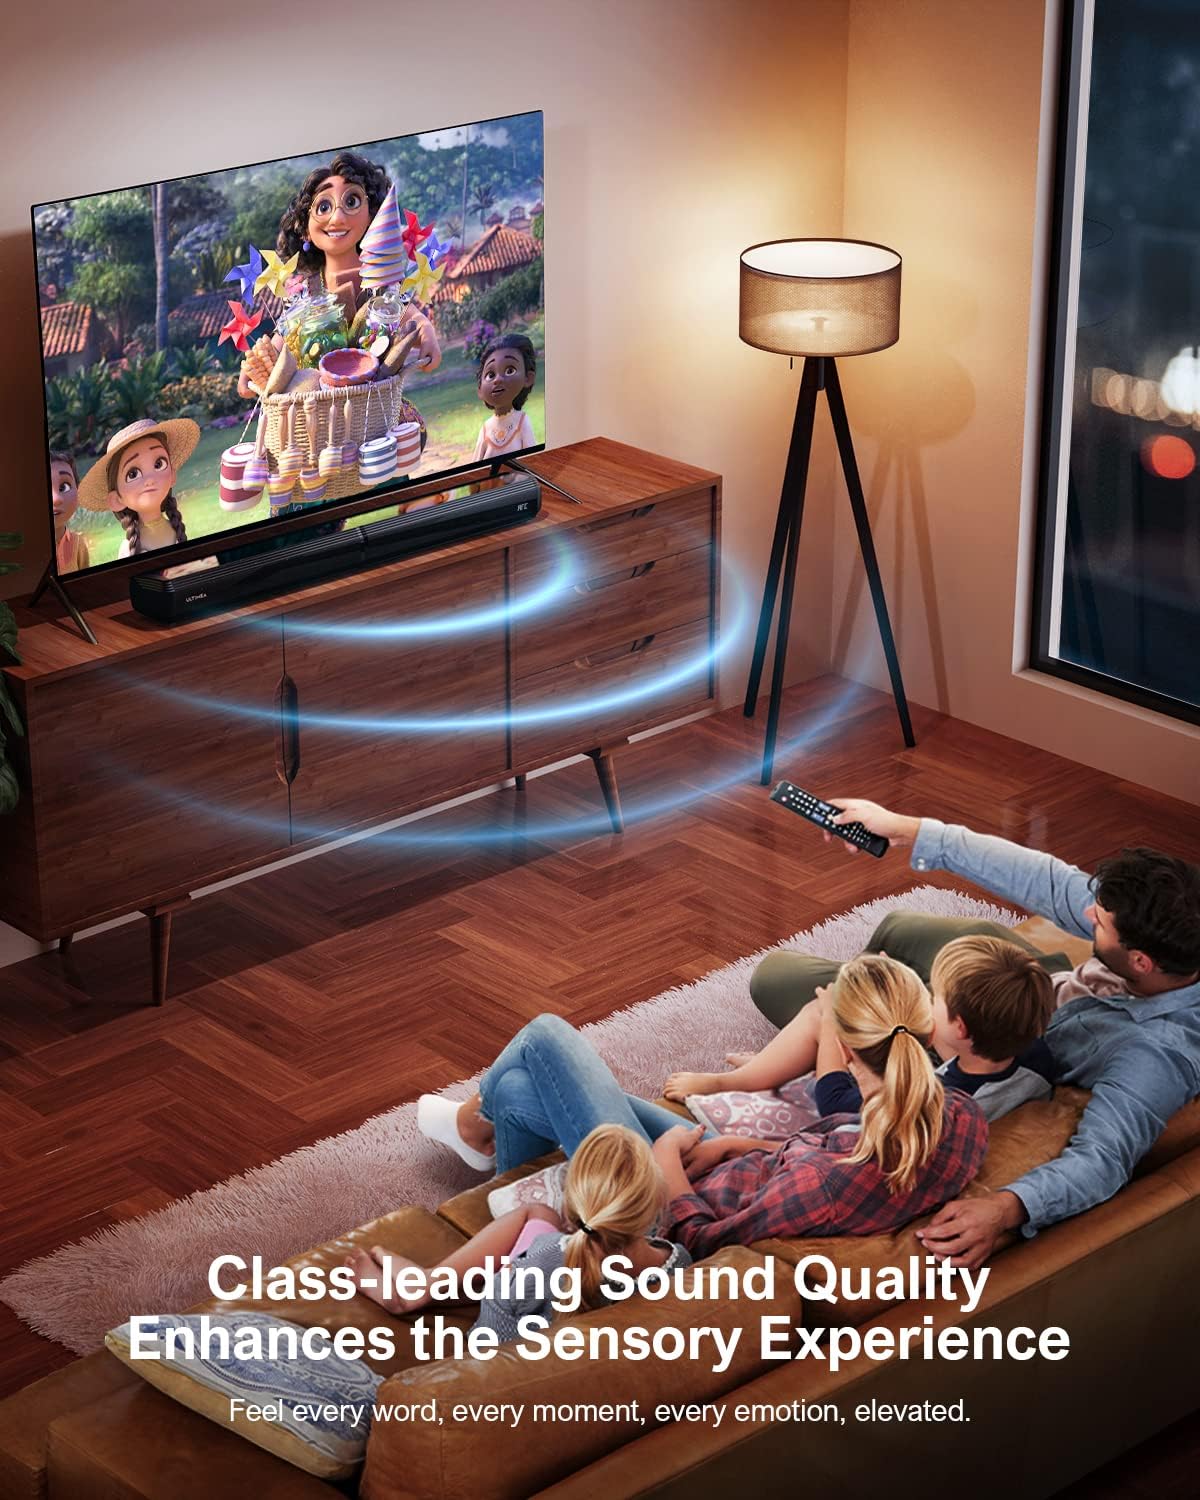 Barras de sonido para TV Bluetooth 5.0 Barra de sonido 50W Split Sound -  VIRTUAL MUEBLES